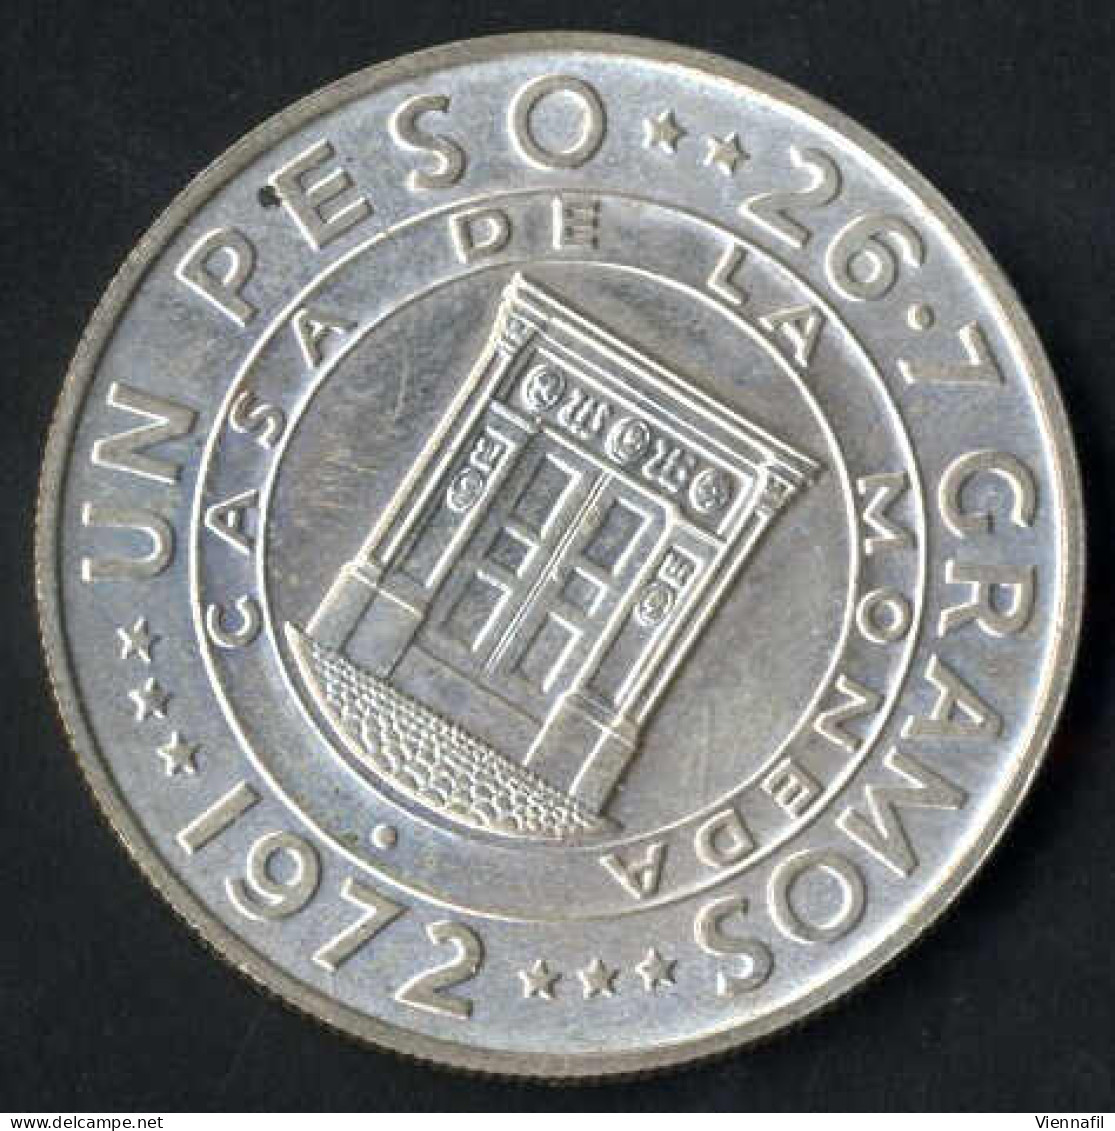 10 Dollar Johannes Paul II,1979, Und Zwei Silbermünzen 1 Peso 25 Jahre Zentralbank, 1972, Unzirkuliert Und PP, Feingewic - Dominicaine